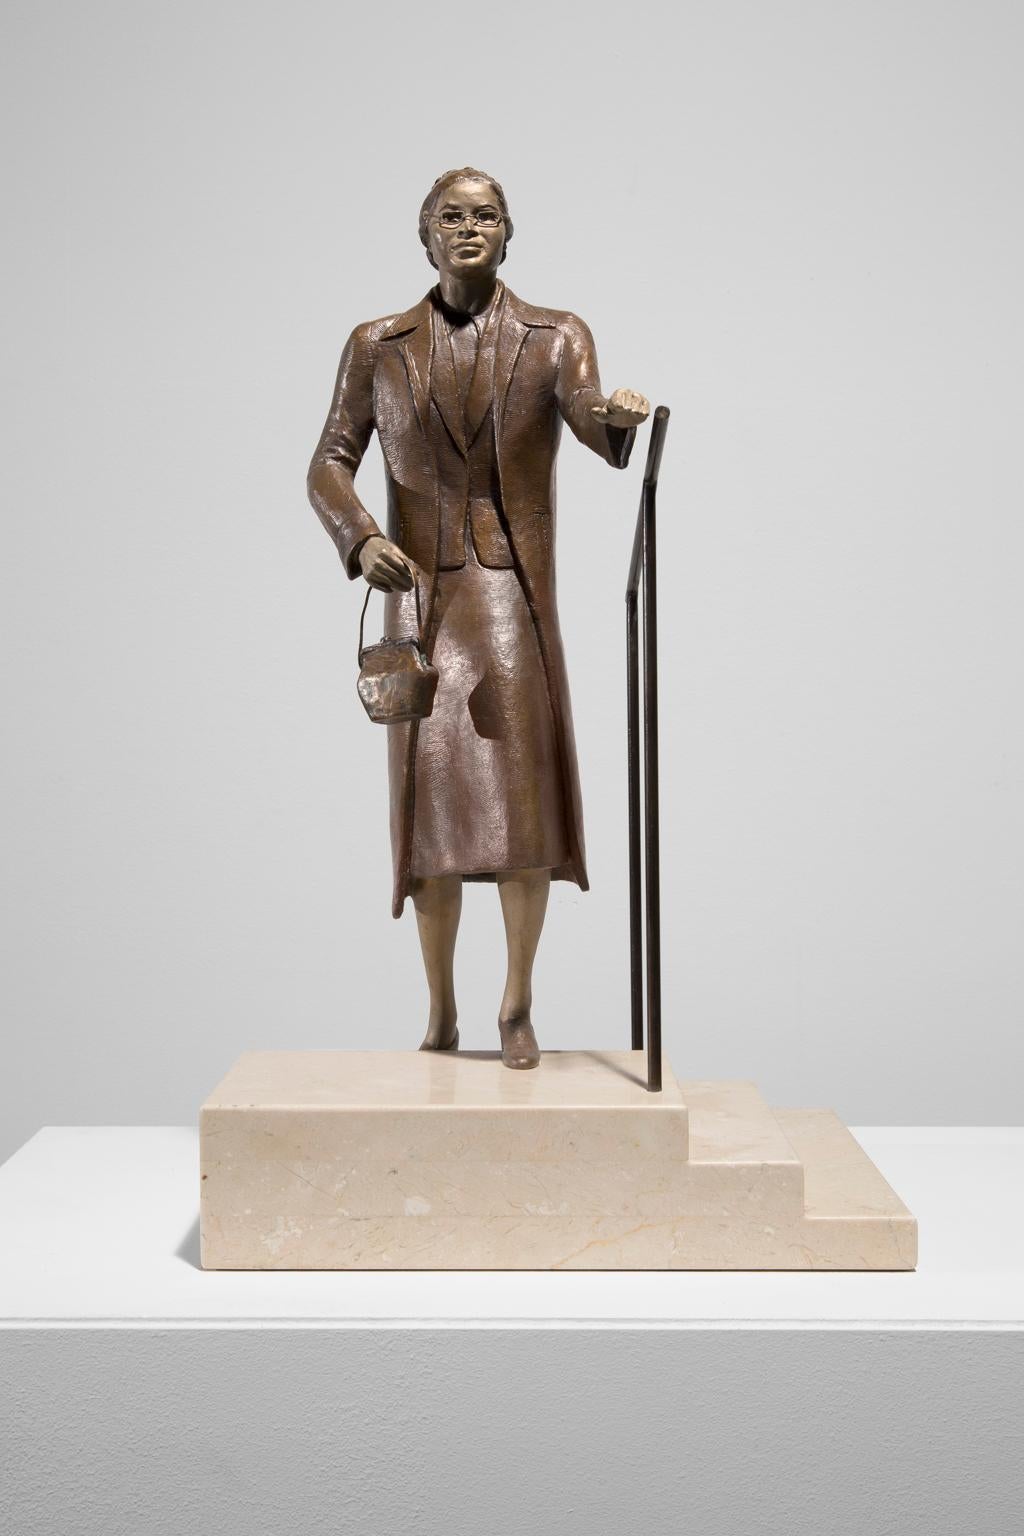 Artis Lane Figurative Sculpture - "Rosa Parks Ascending Steps" Bronze, Portrait, Iconic Figure, Historical Scene